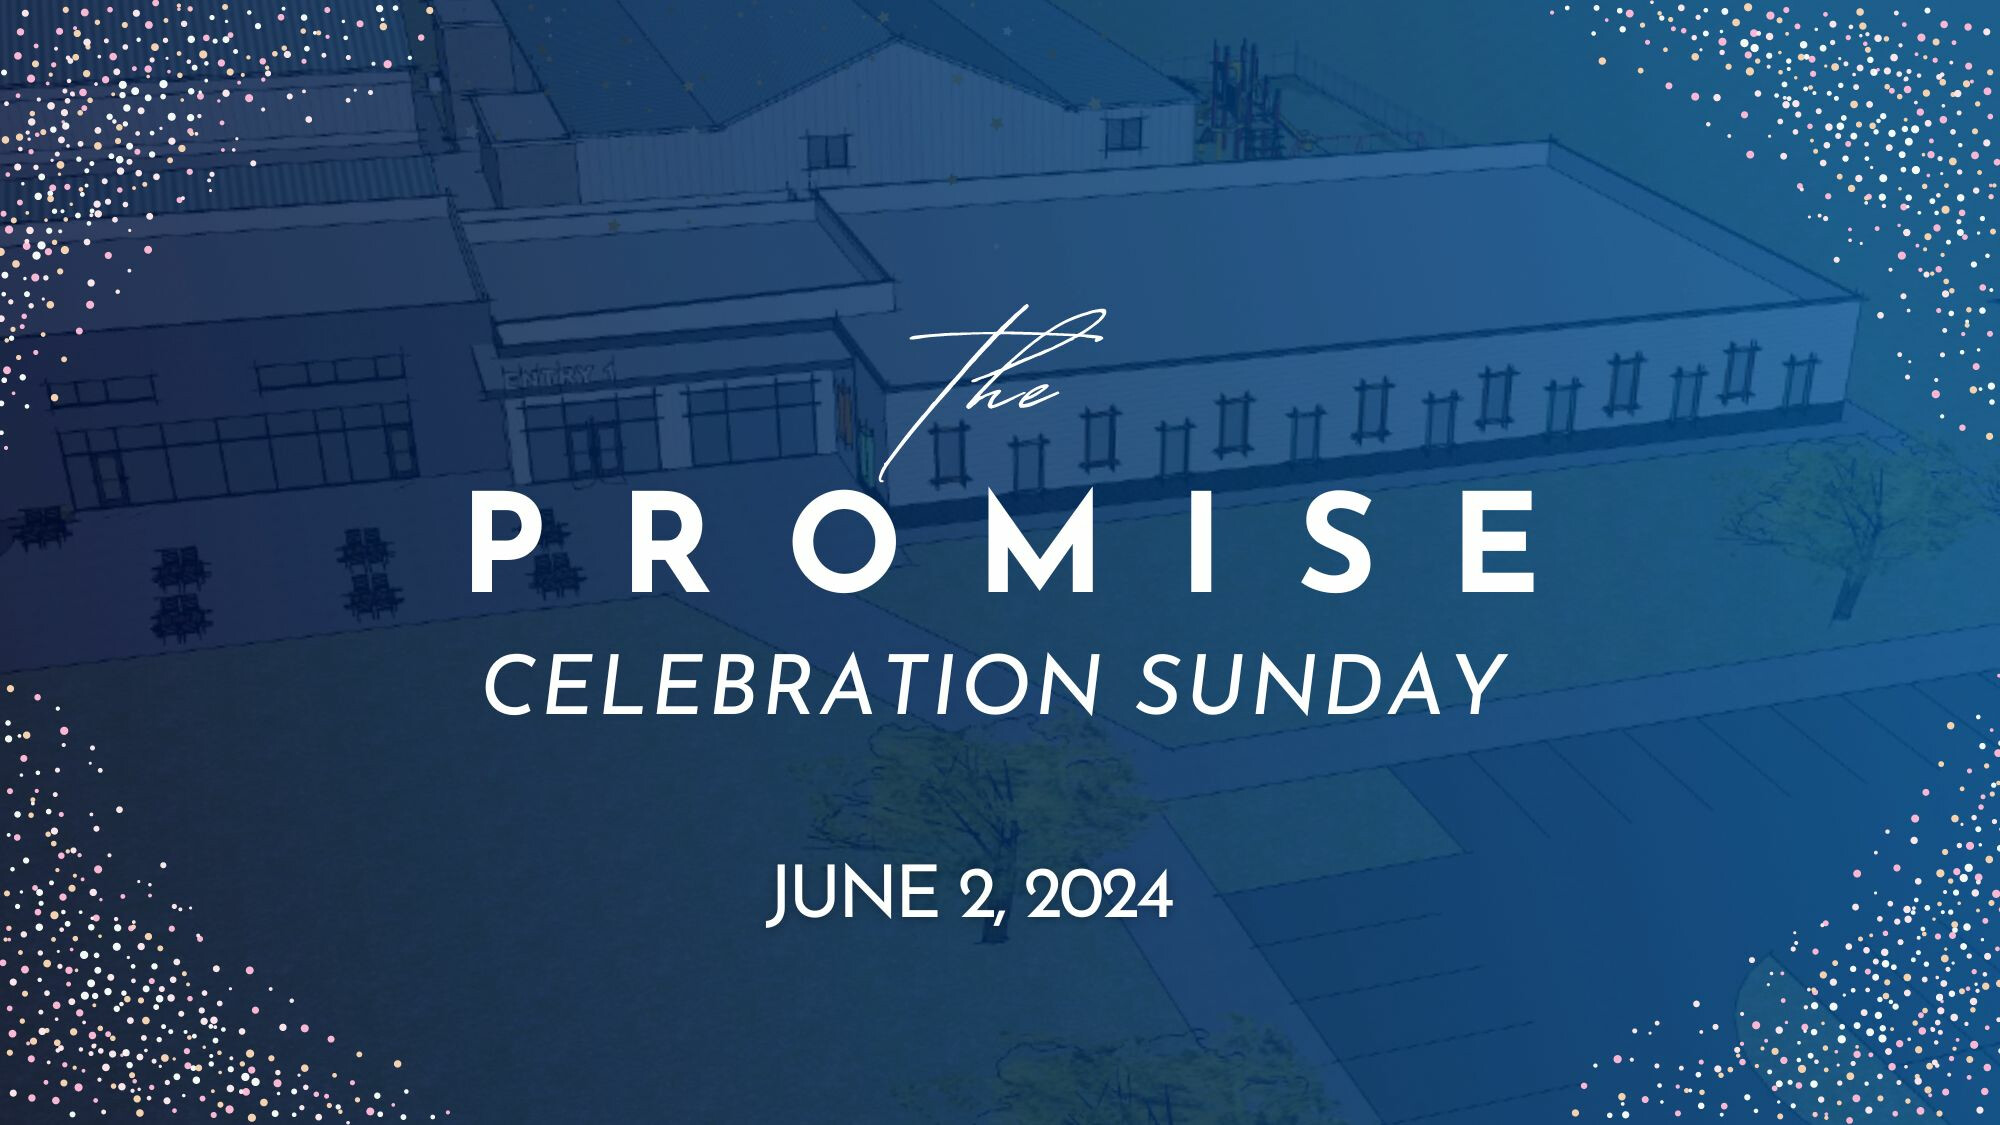 "The Promise" Celebration Sunday